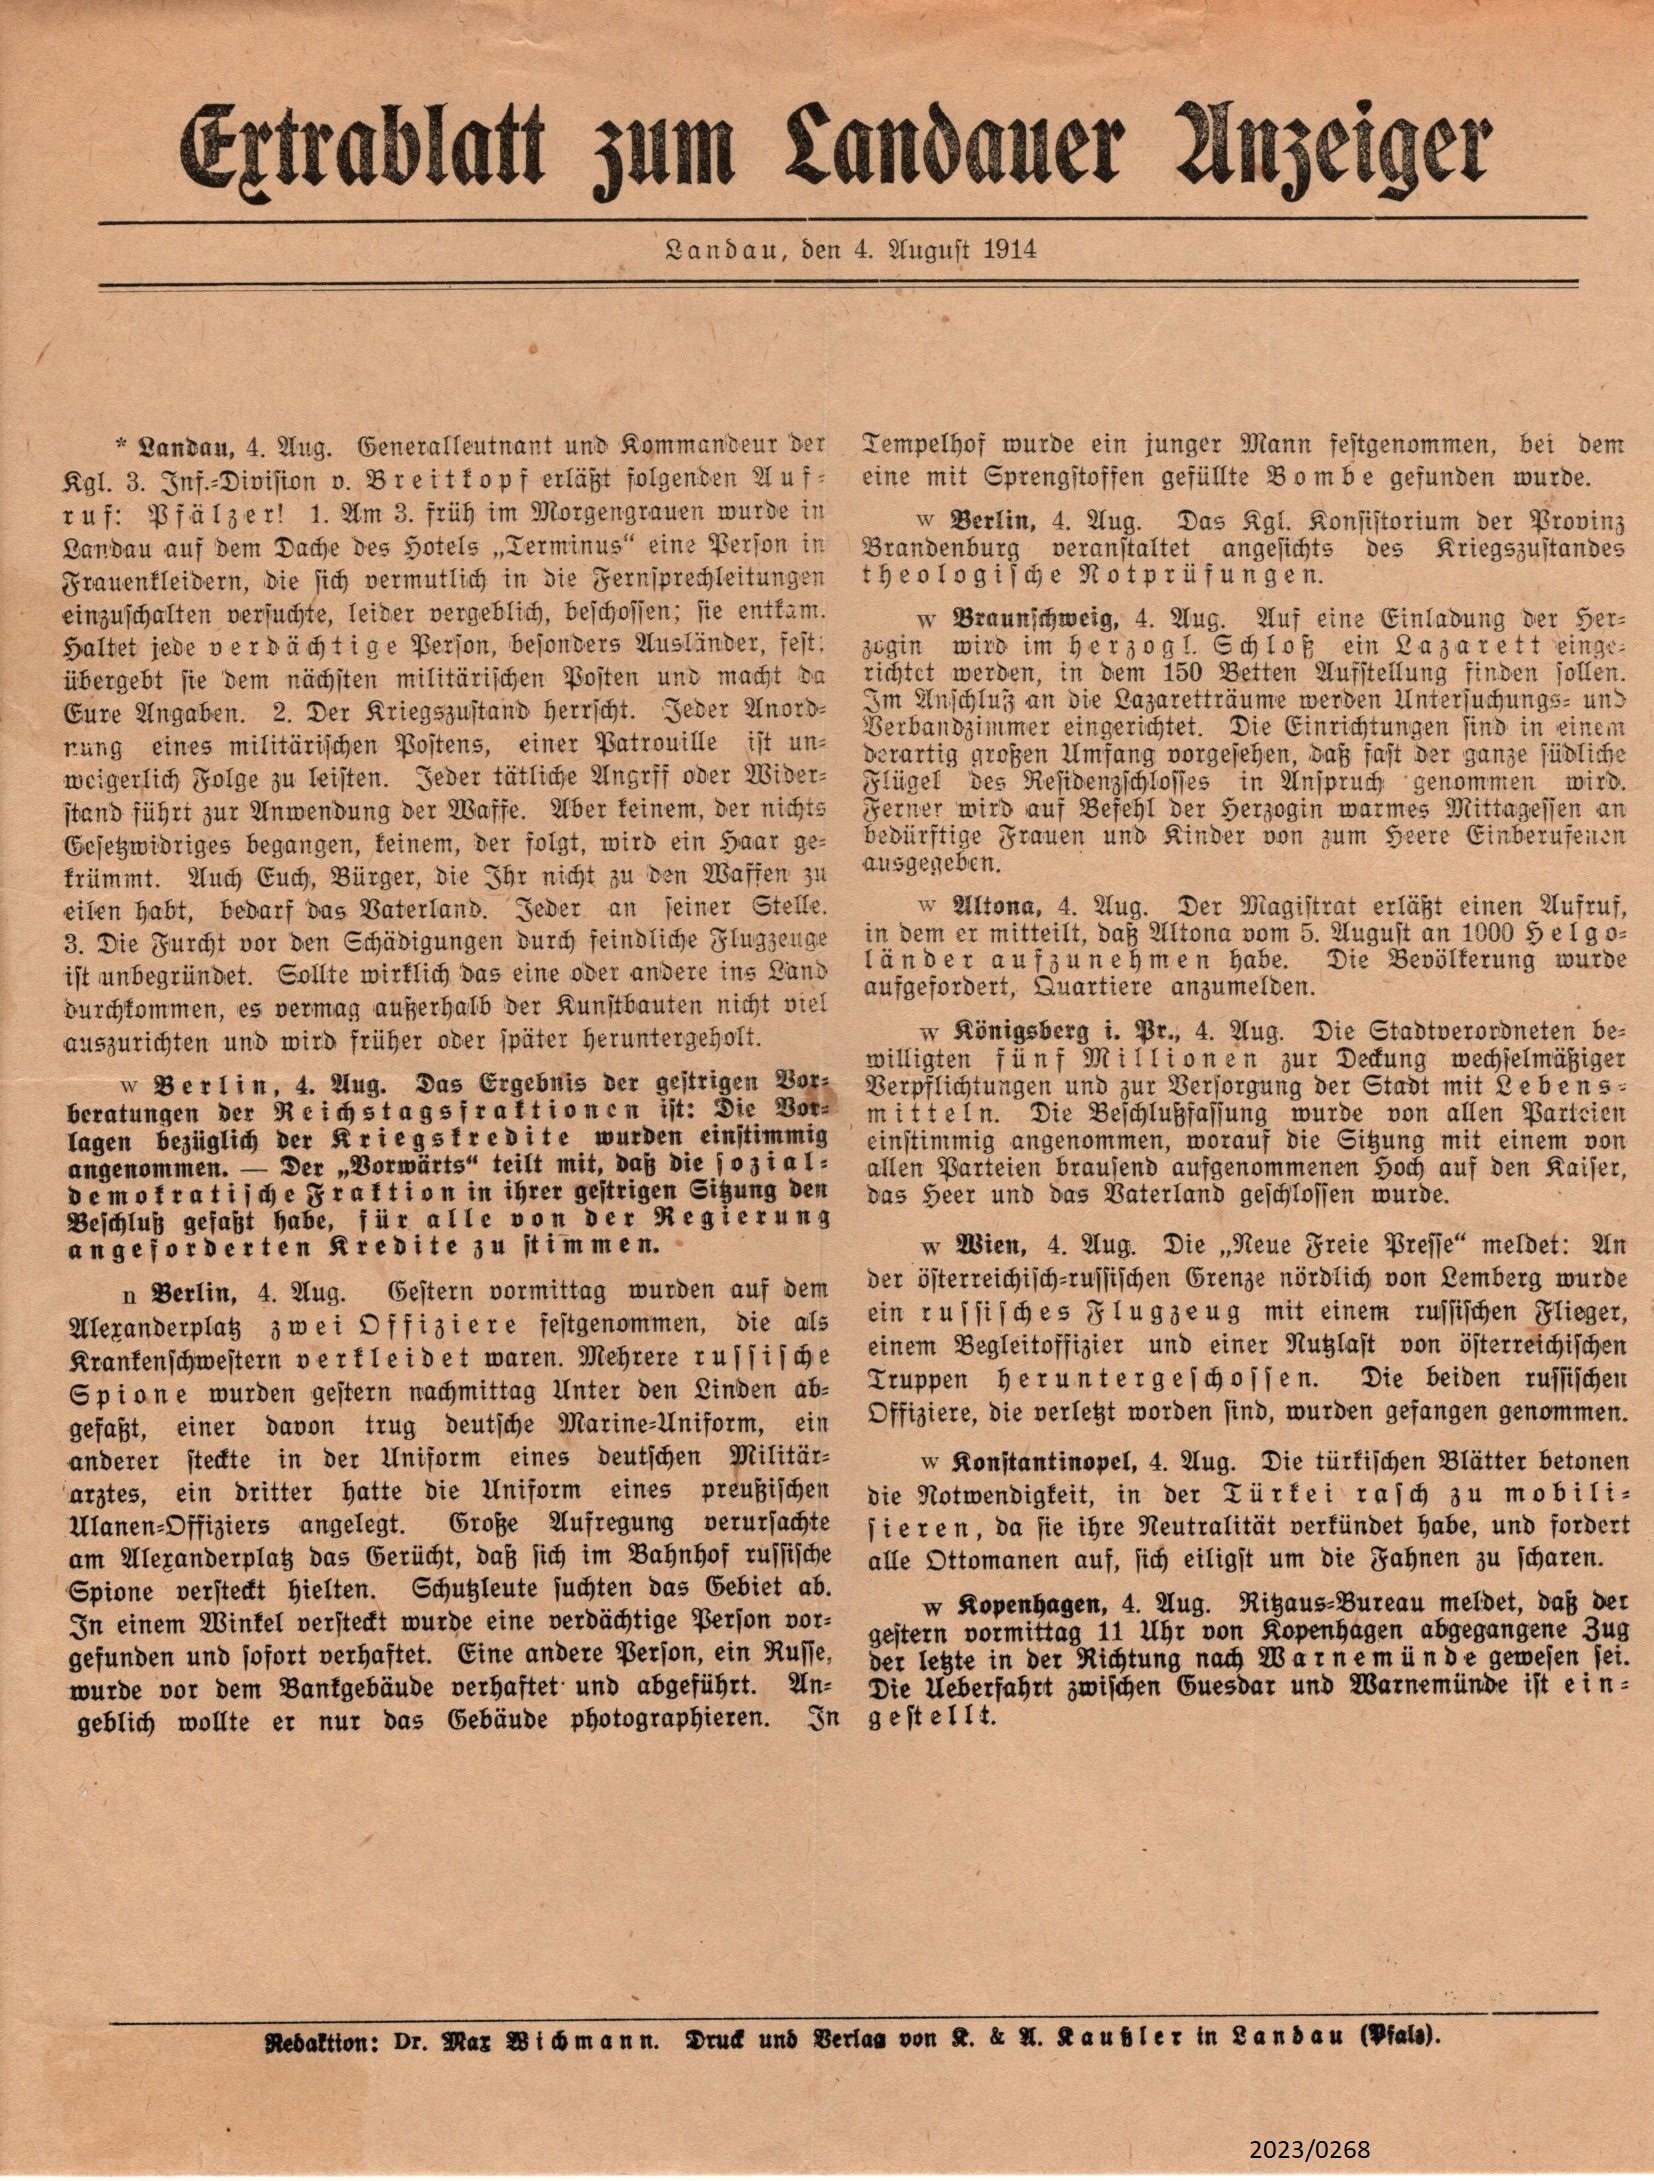 Extrablatt zum Landauer Anzeiger, 4. August 1914 (Stadtmuseum Bad Dürkheim im Kulturzentrum Haus Catoir CC BY-NC-SA)